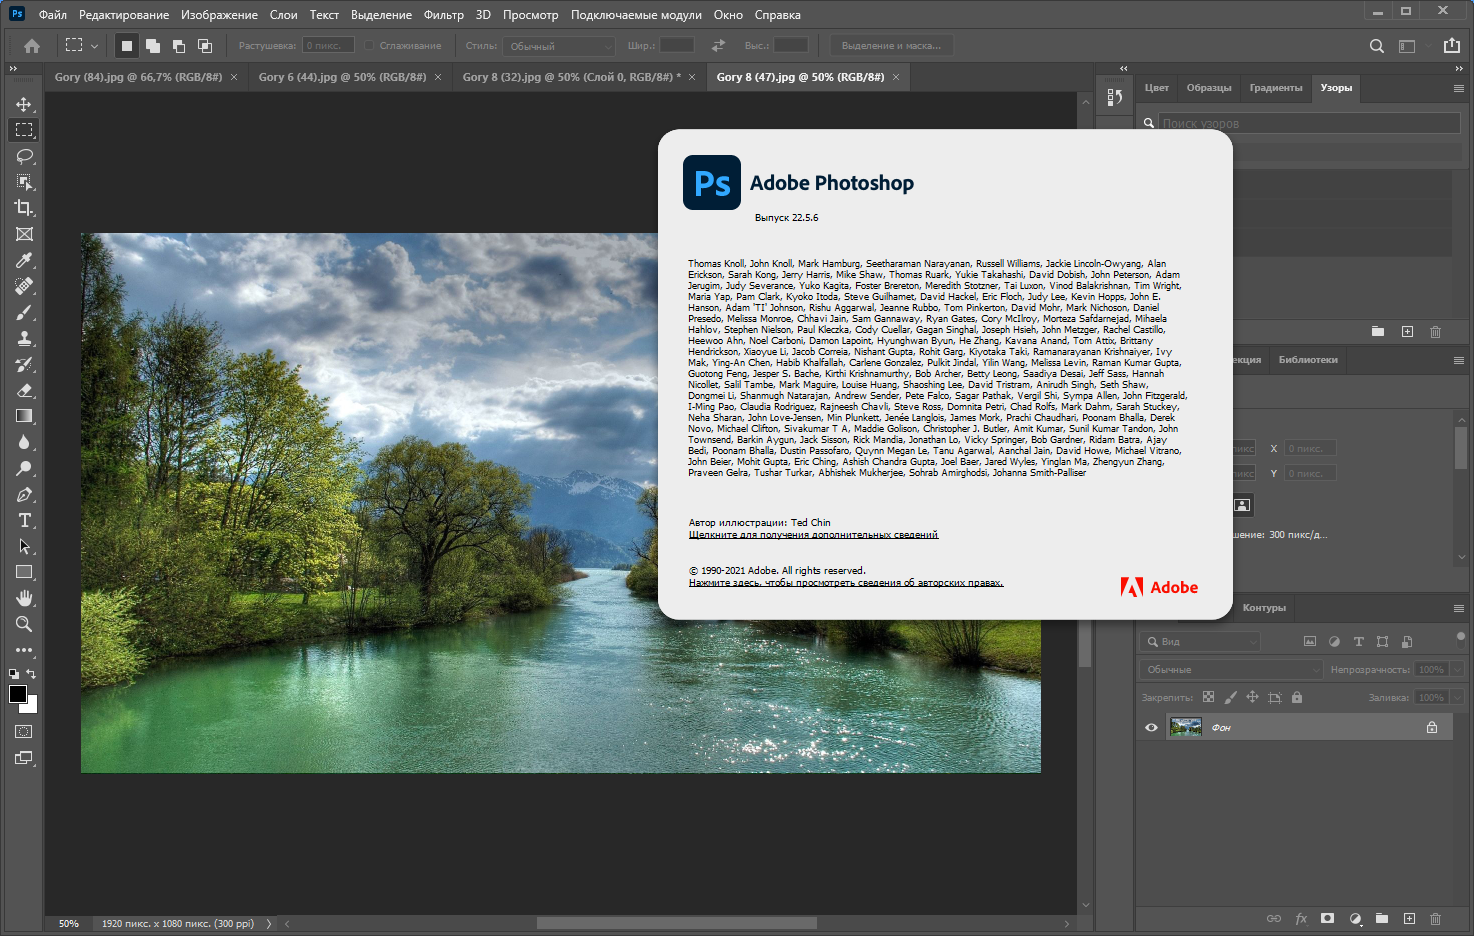 Adobe Photoshop 2021 22.5.6.749 RePack by KpoJIuK [Multi/Ru]